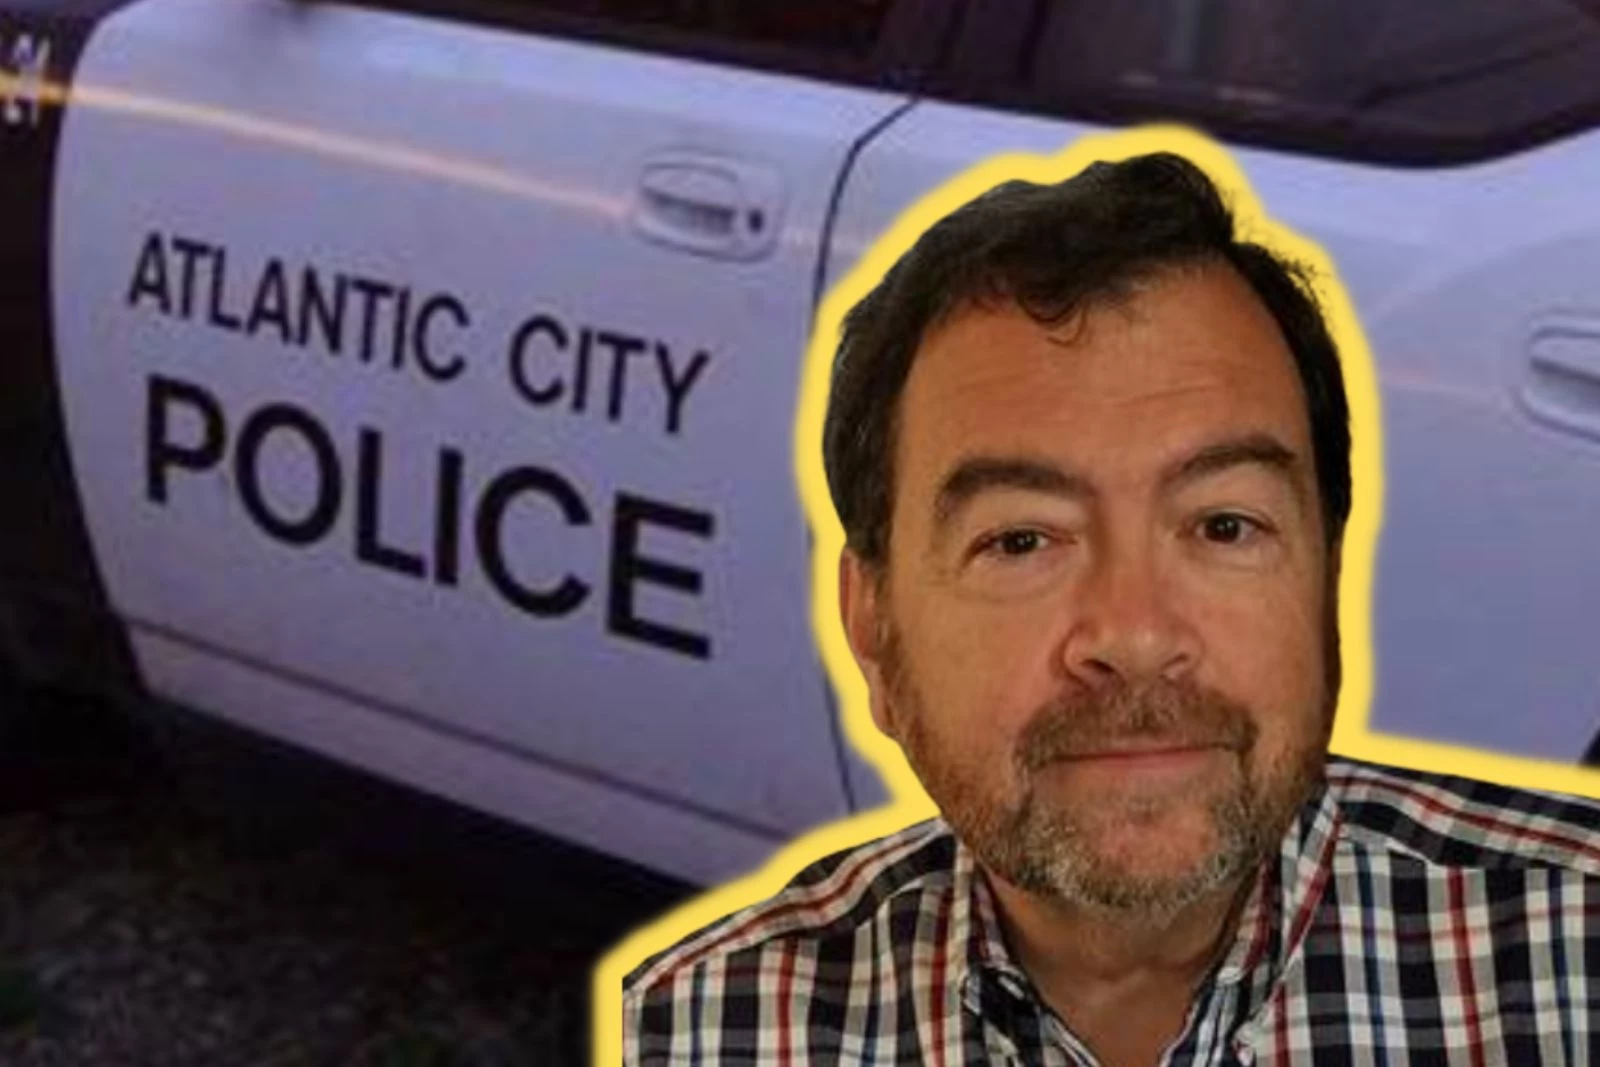 Vigilante helps Atlantic City police bust accused child predator